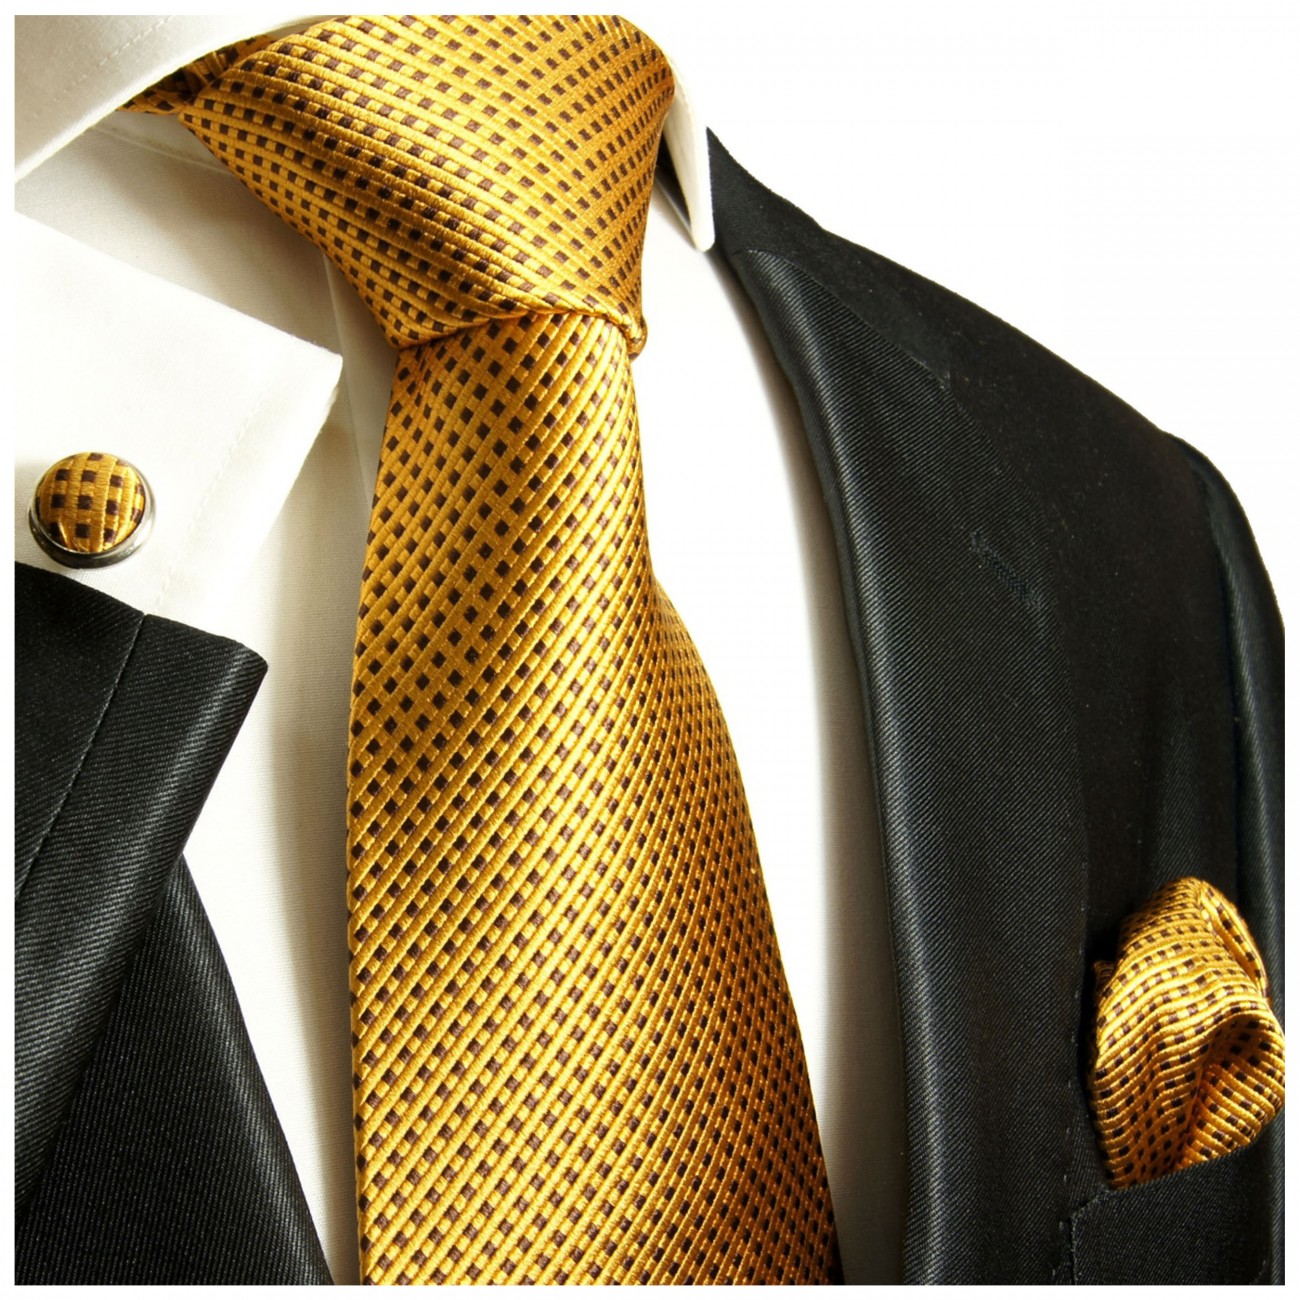 Krawatte gold braun mit Einstecktuch und Manschettenknöpfe